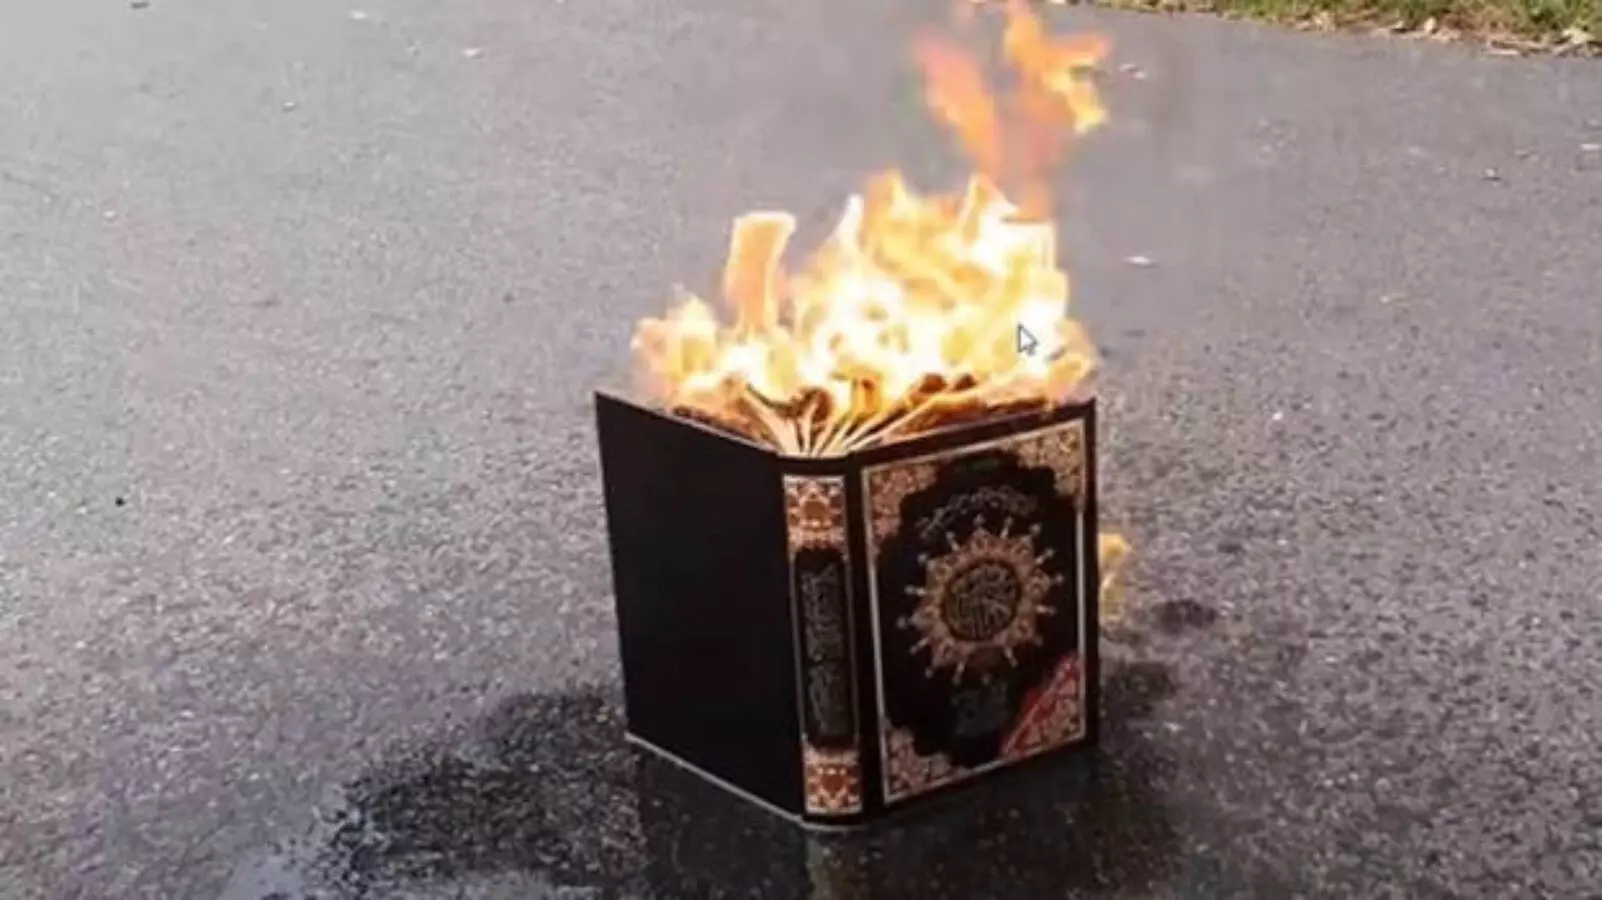 Iraq tells Sweden it ‘ll cut ties if Koran burned again